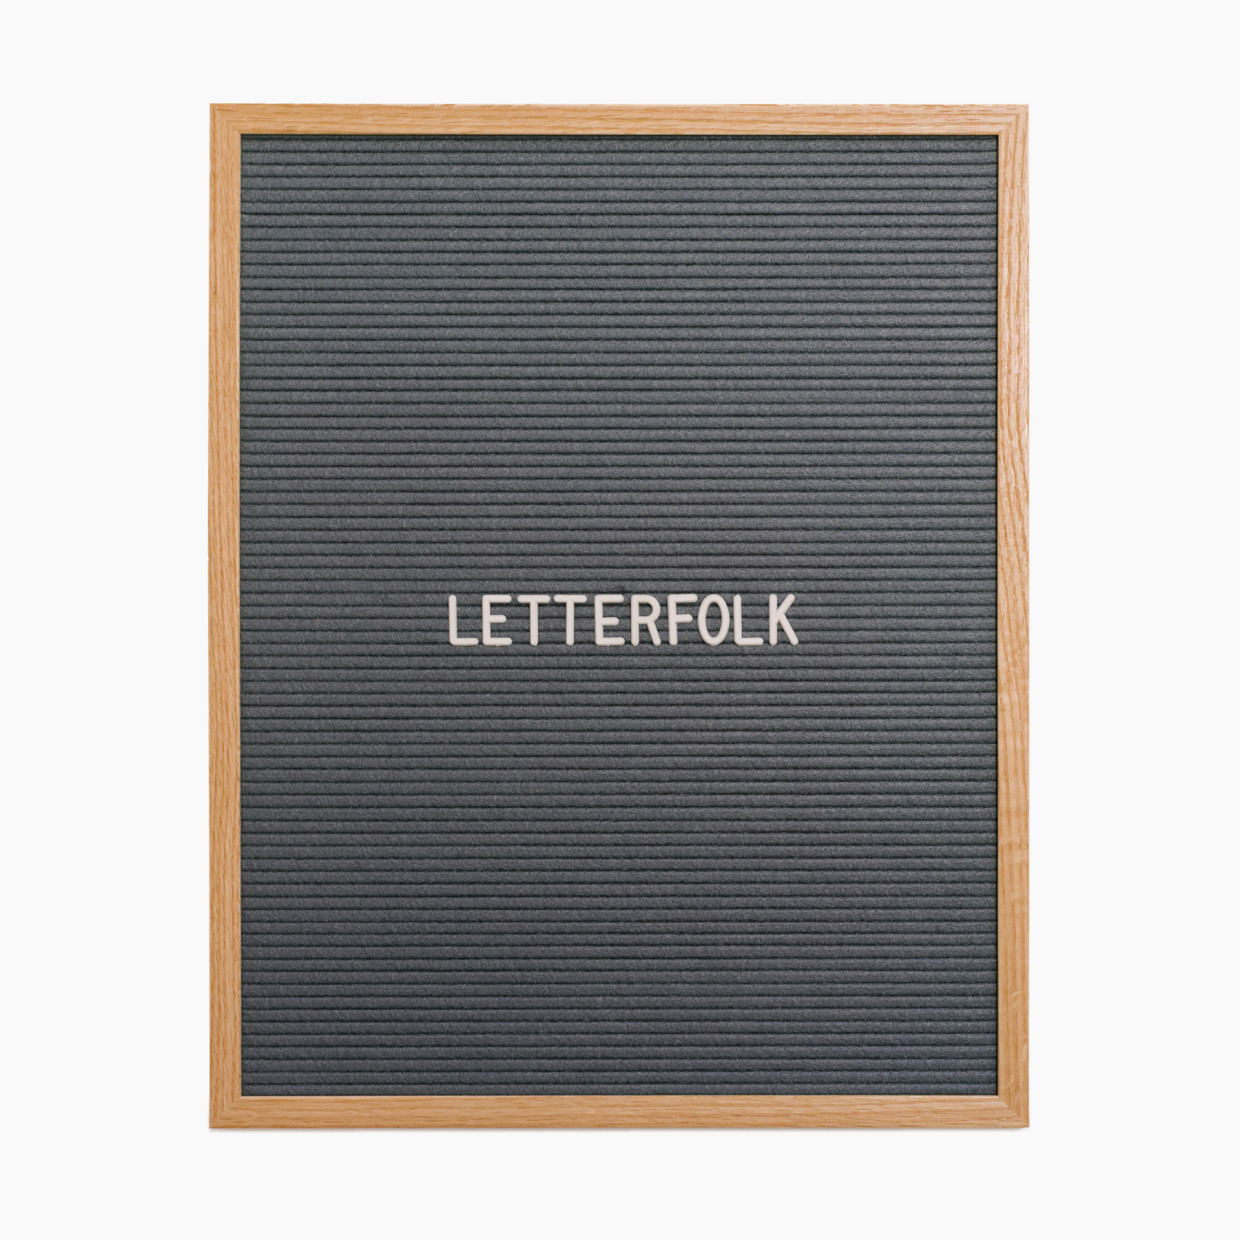 Letterfolk Writer Letterboard - Grey Felt/Oakl Frame, 16" X 20".